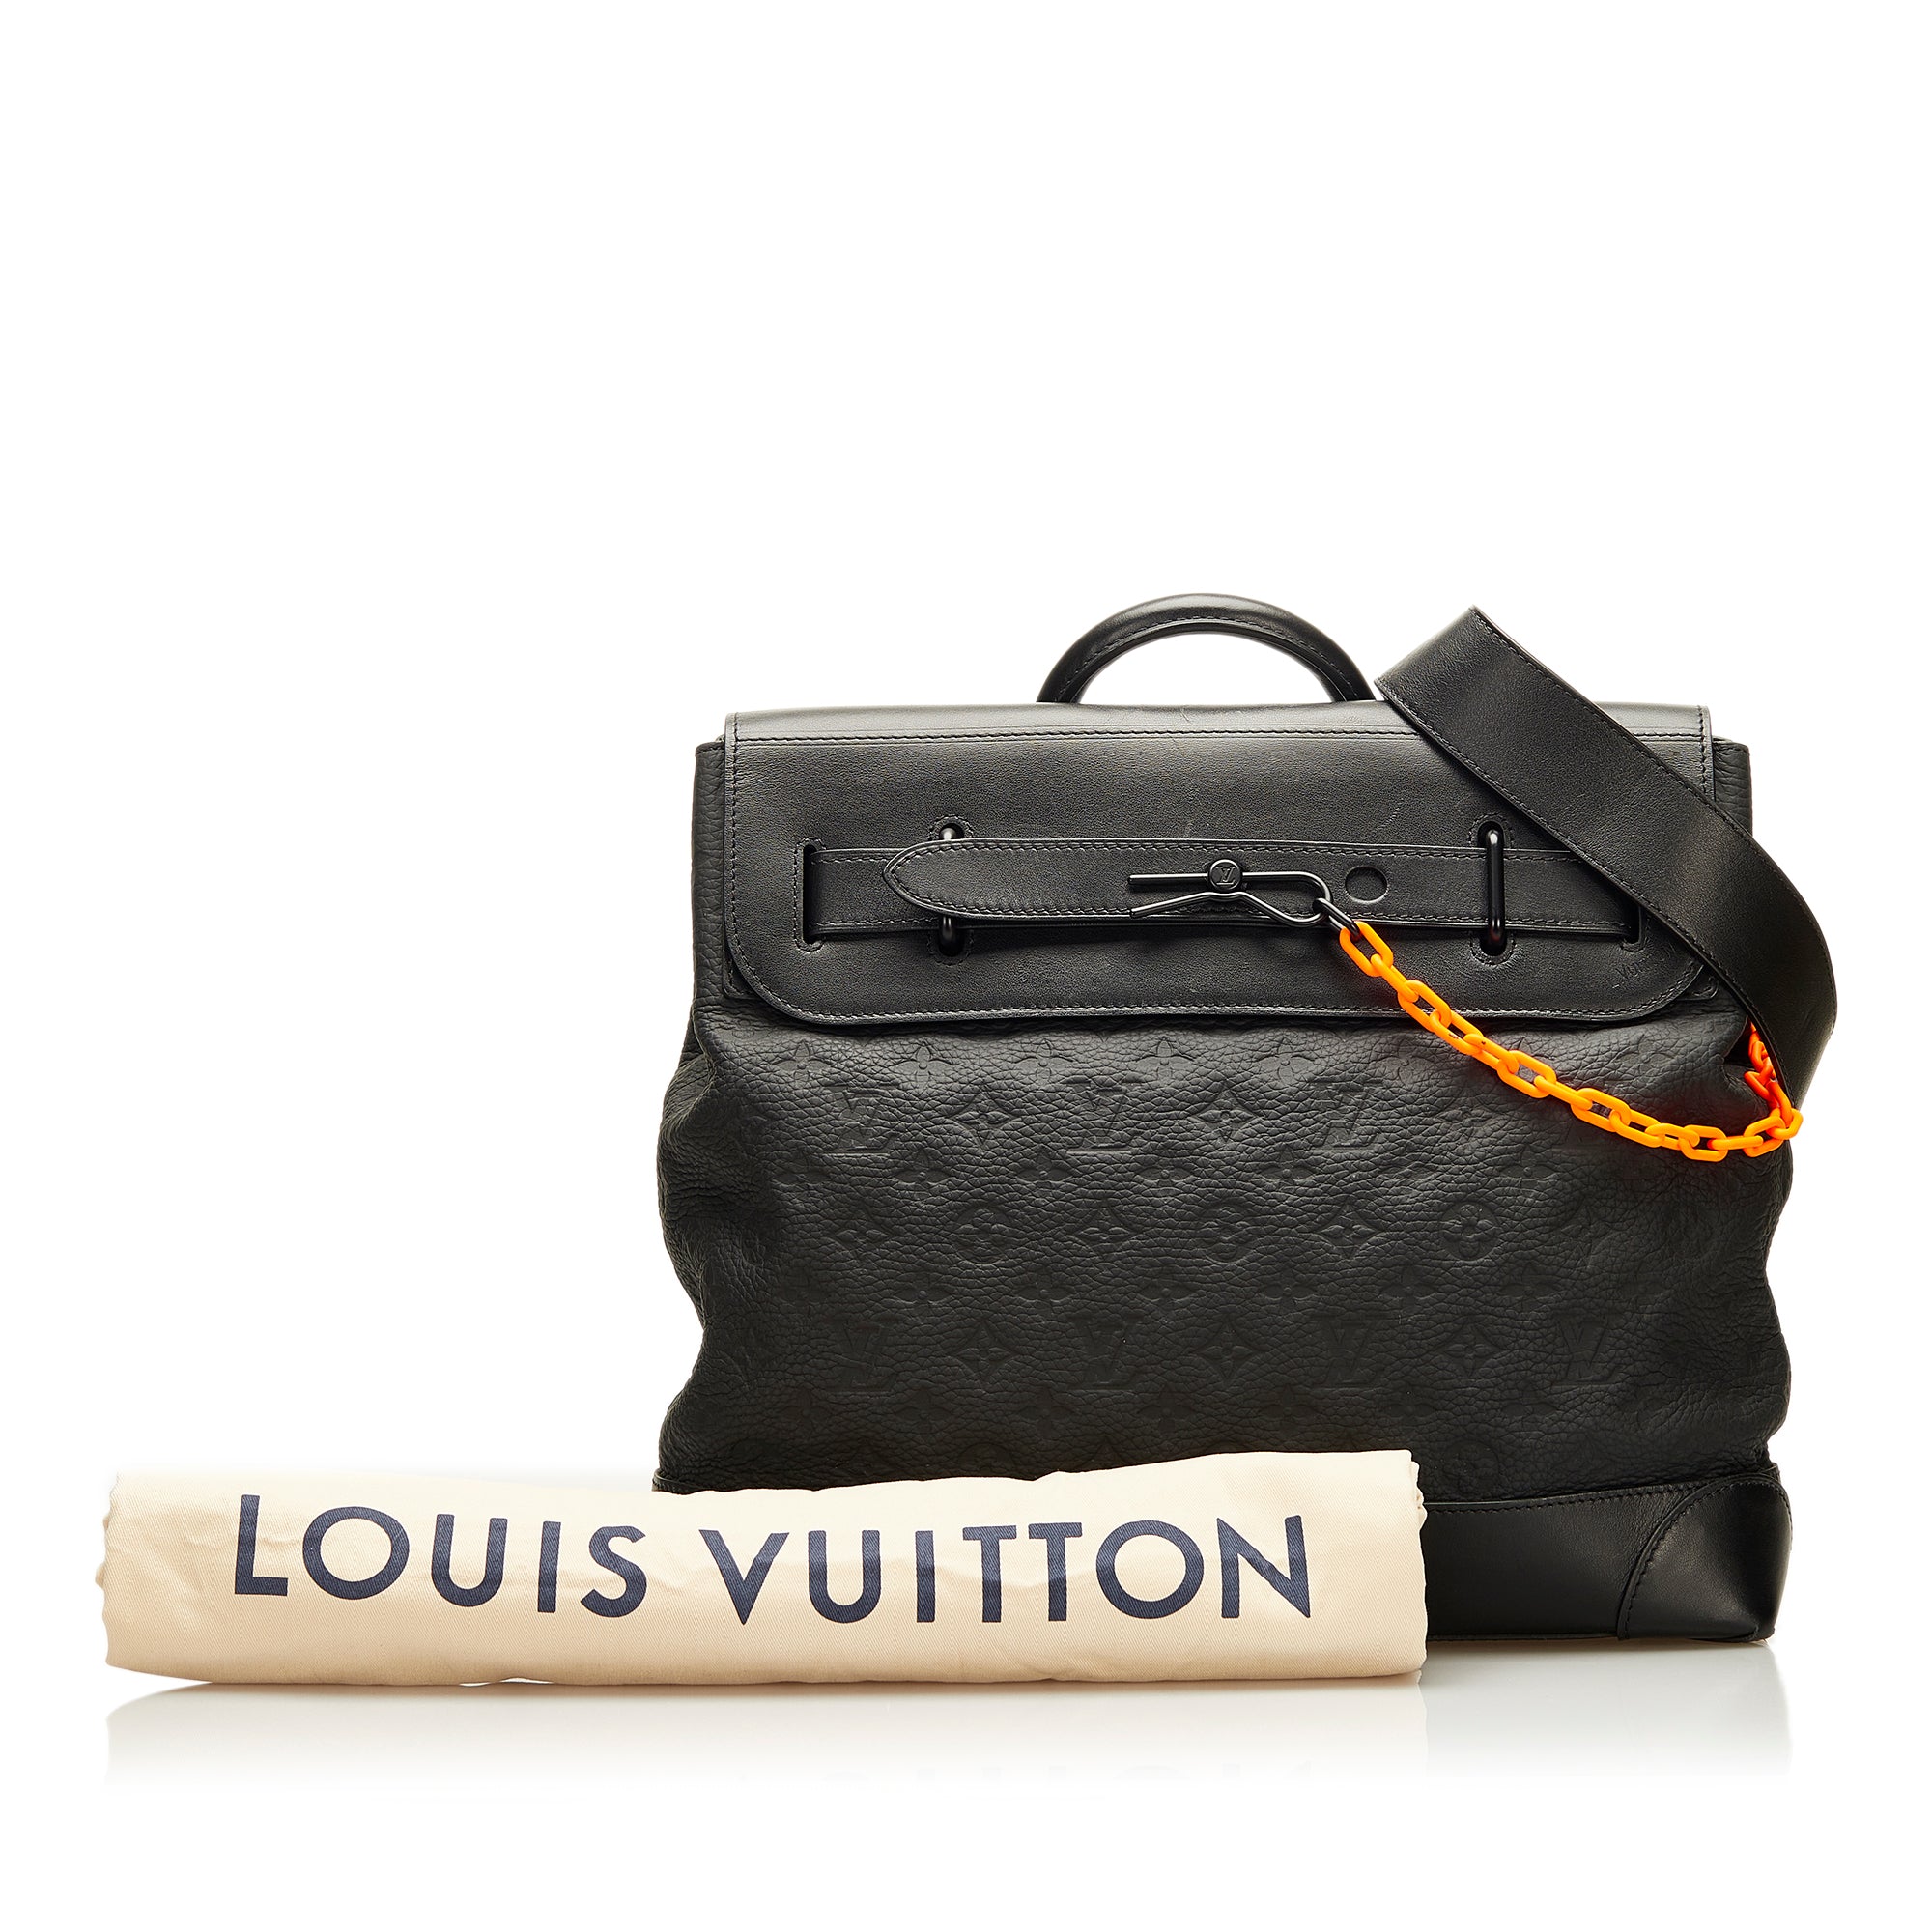 Louis vuitton😍#louisvuitton #schweiz #switzerland